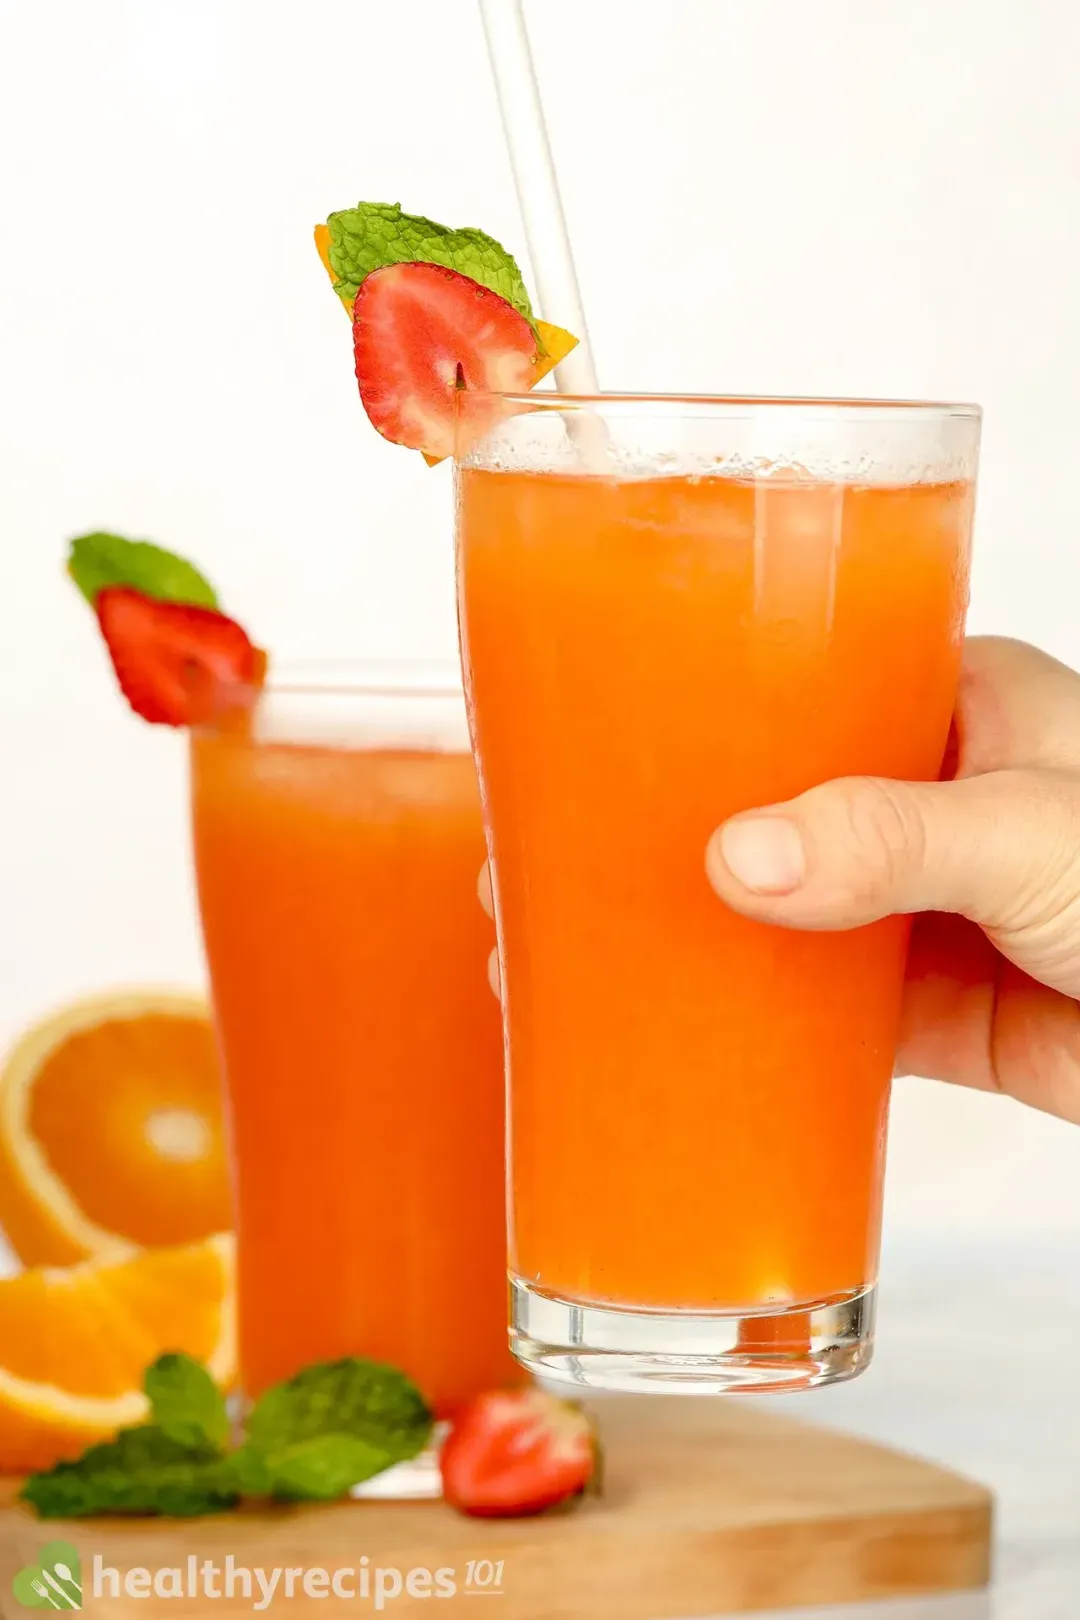 Storing and Freezing Strawberry Orange Juice